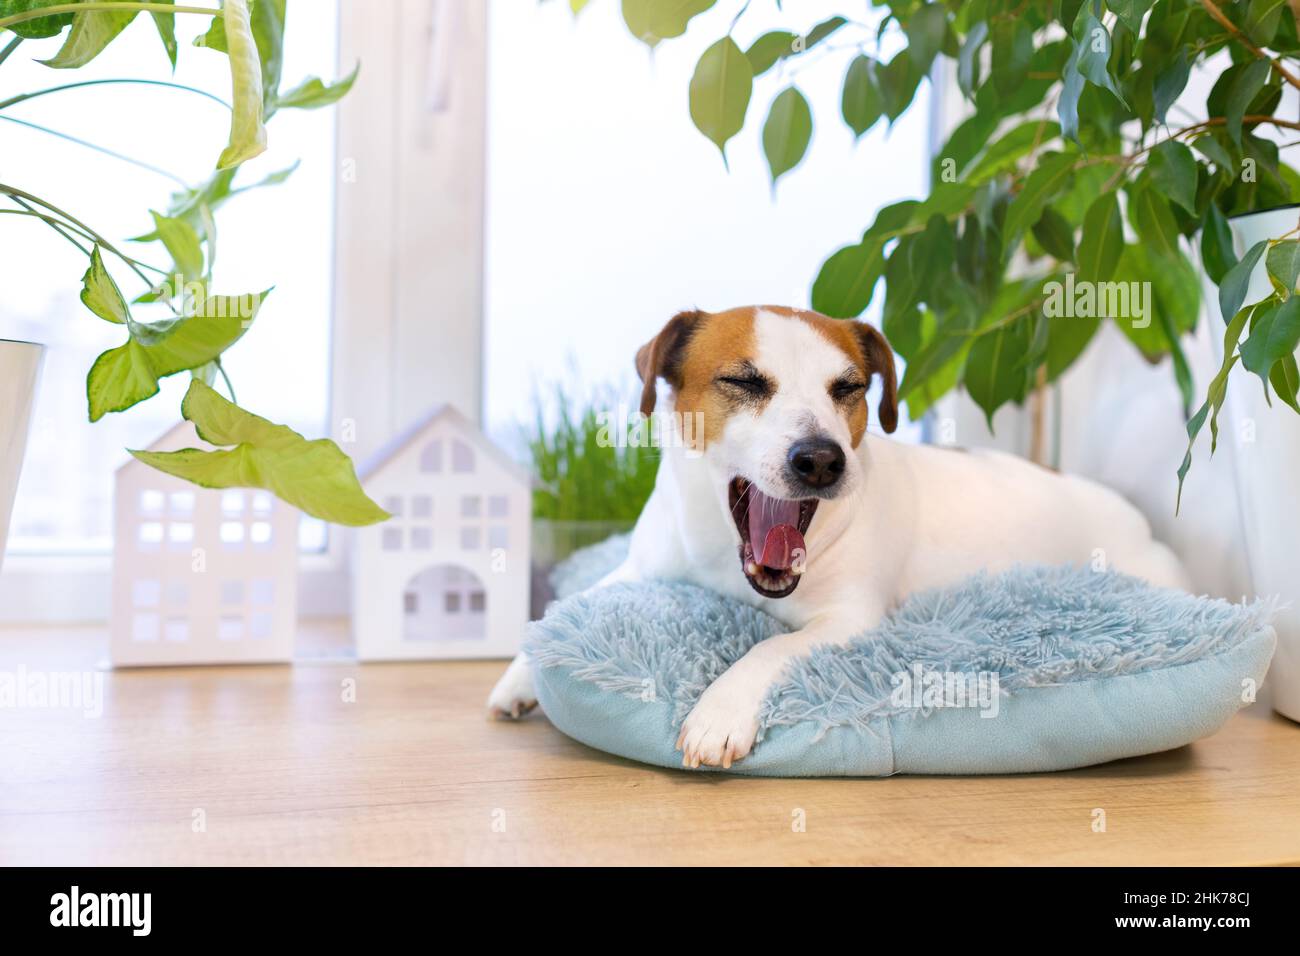 Jack Russell Terrier, chien endormi et enjoué, allongé sur un oreiller bleu moelleux sur le rebord de la fenêtre.Animal bichonné.Endroit confortable pour dormir par la fenêtre entourée Banque D'Images